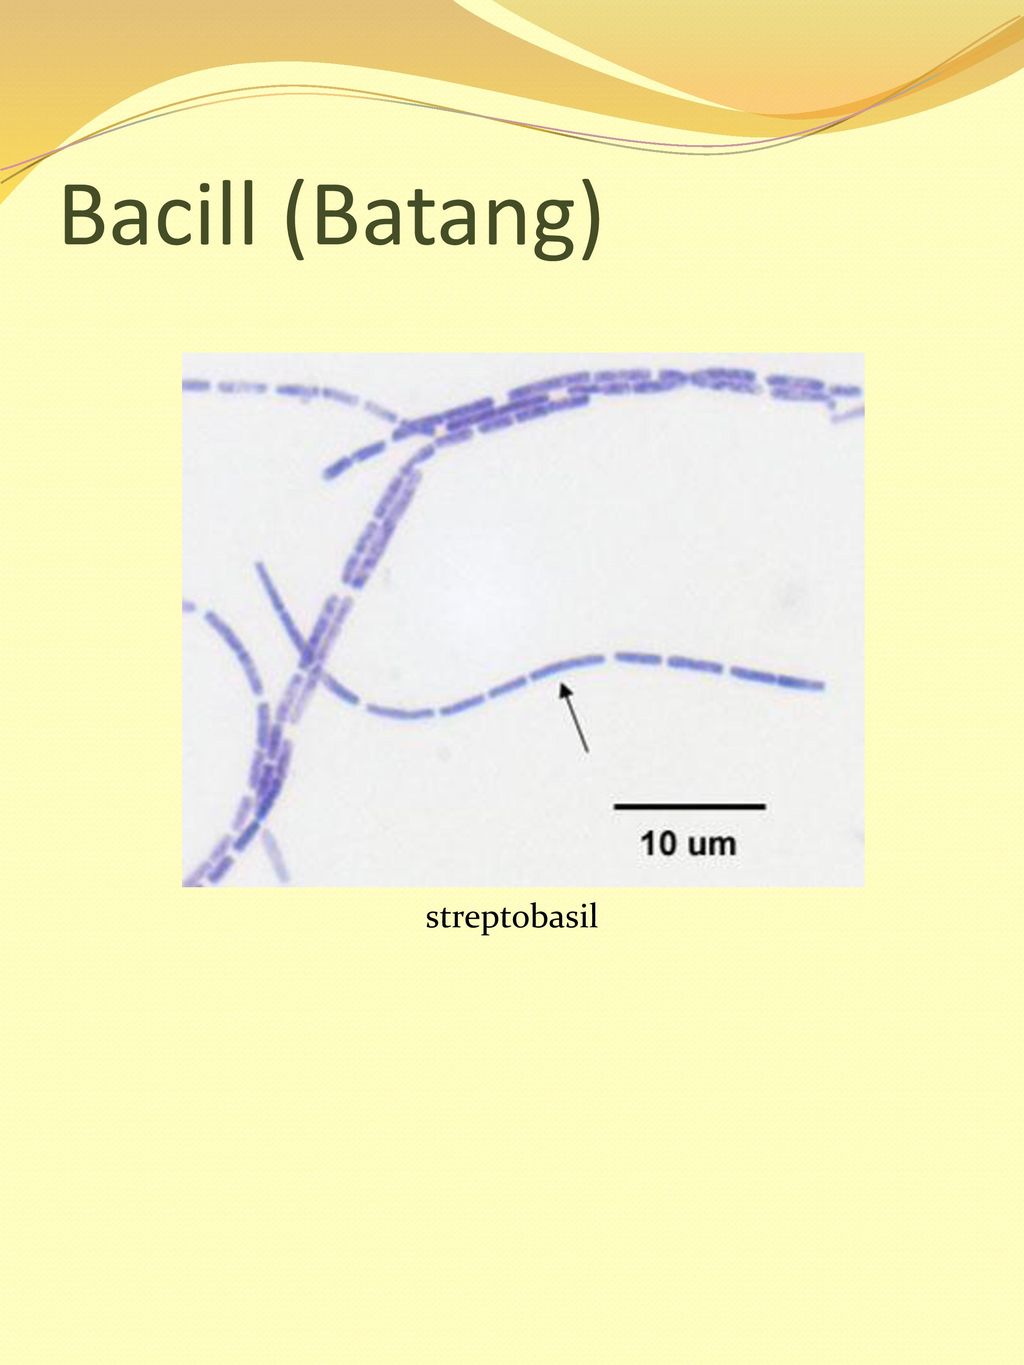 Bacill (Batang) streptobasil